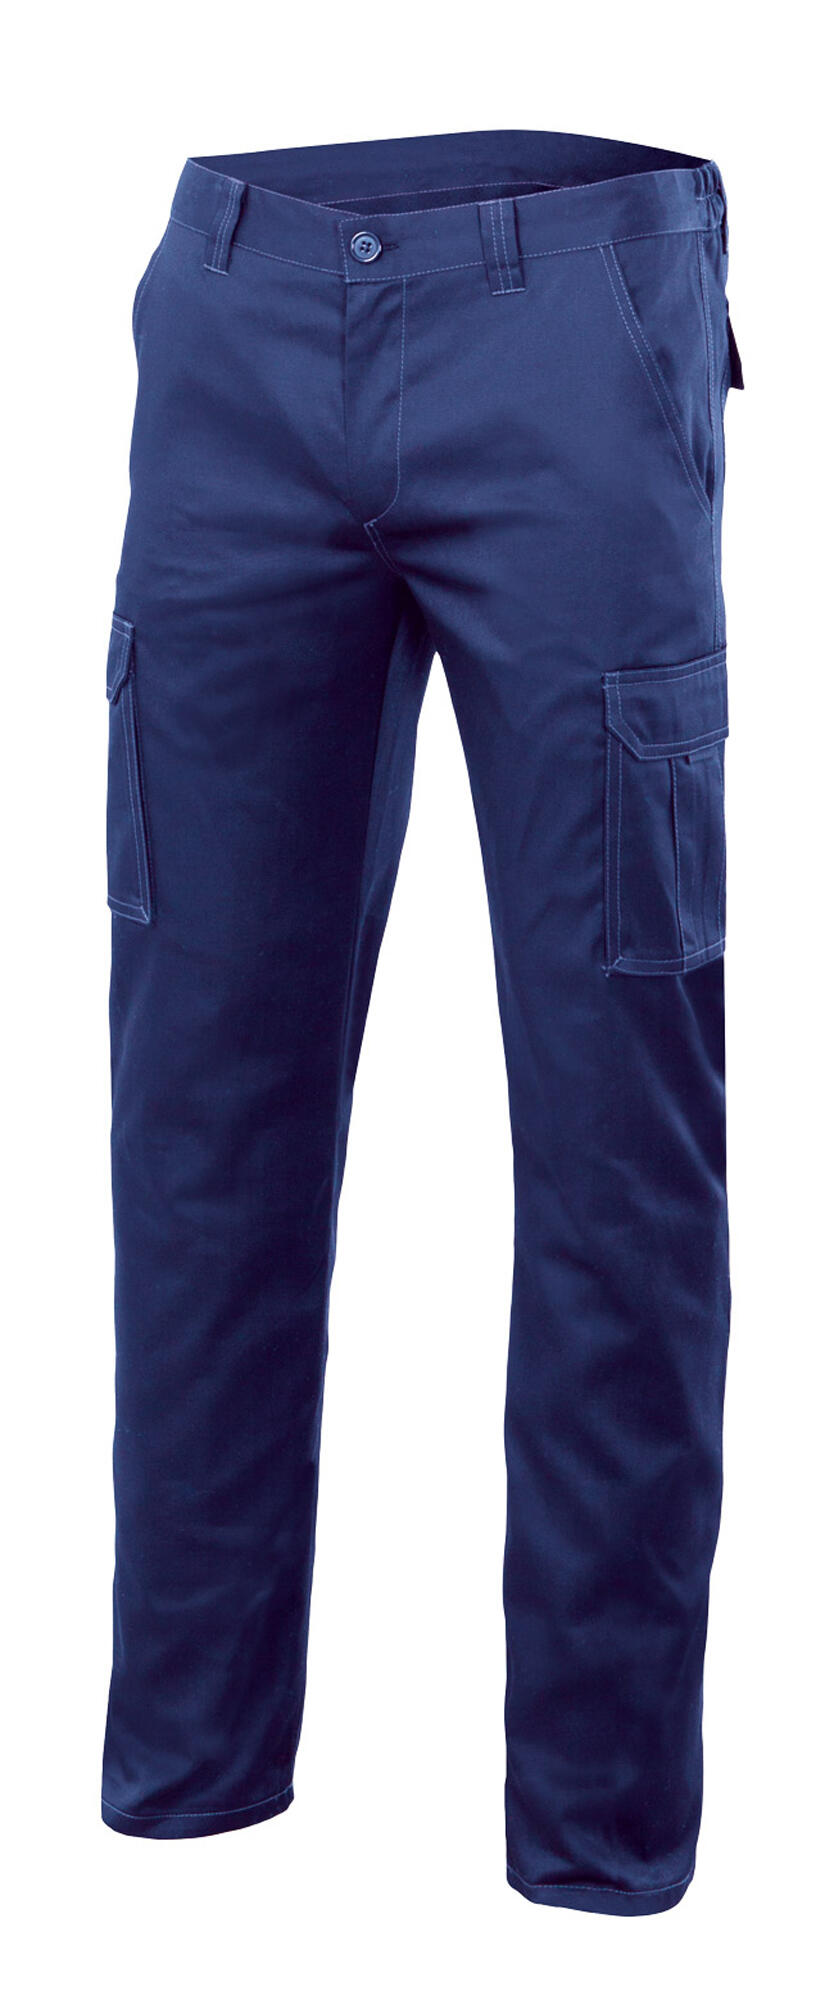 Pantalon de trabajo multibolsillo stretch azulina t58